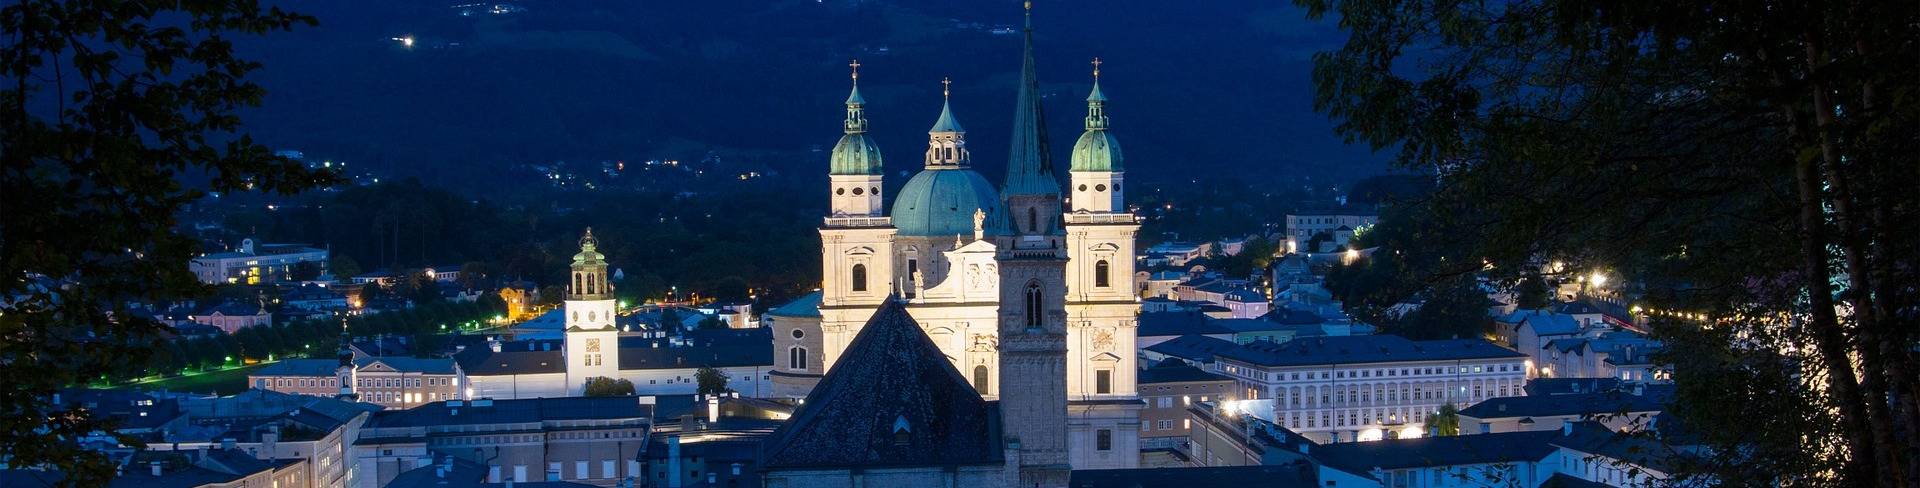 Зальцбург - город в Австрии